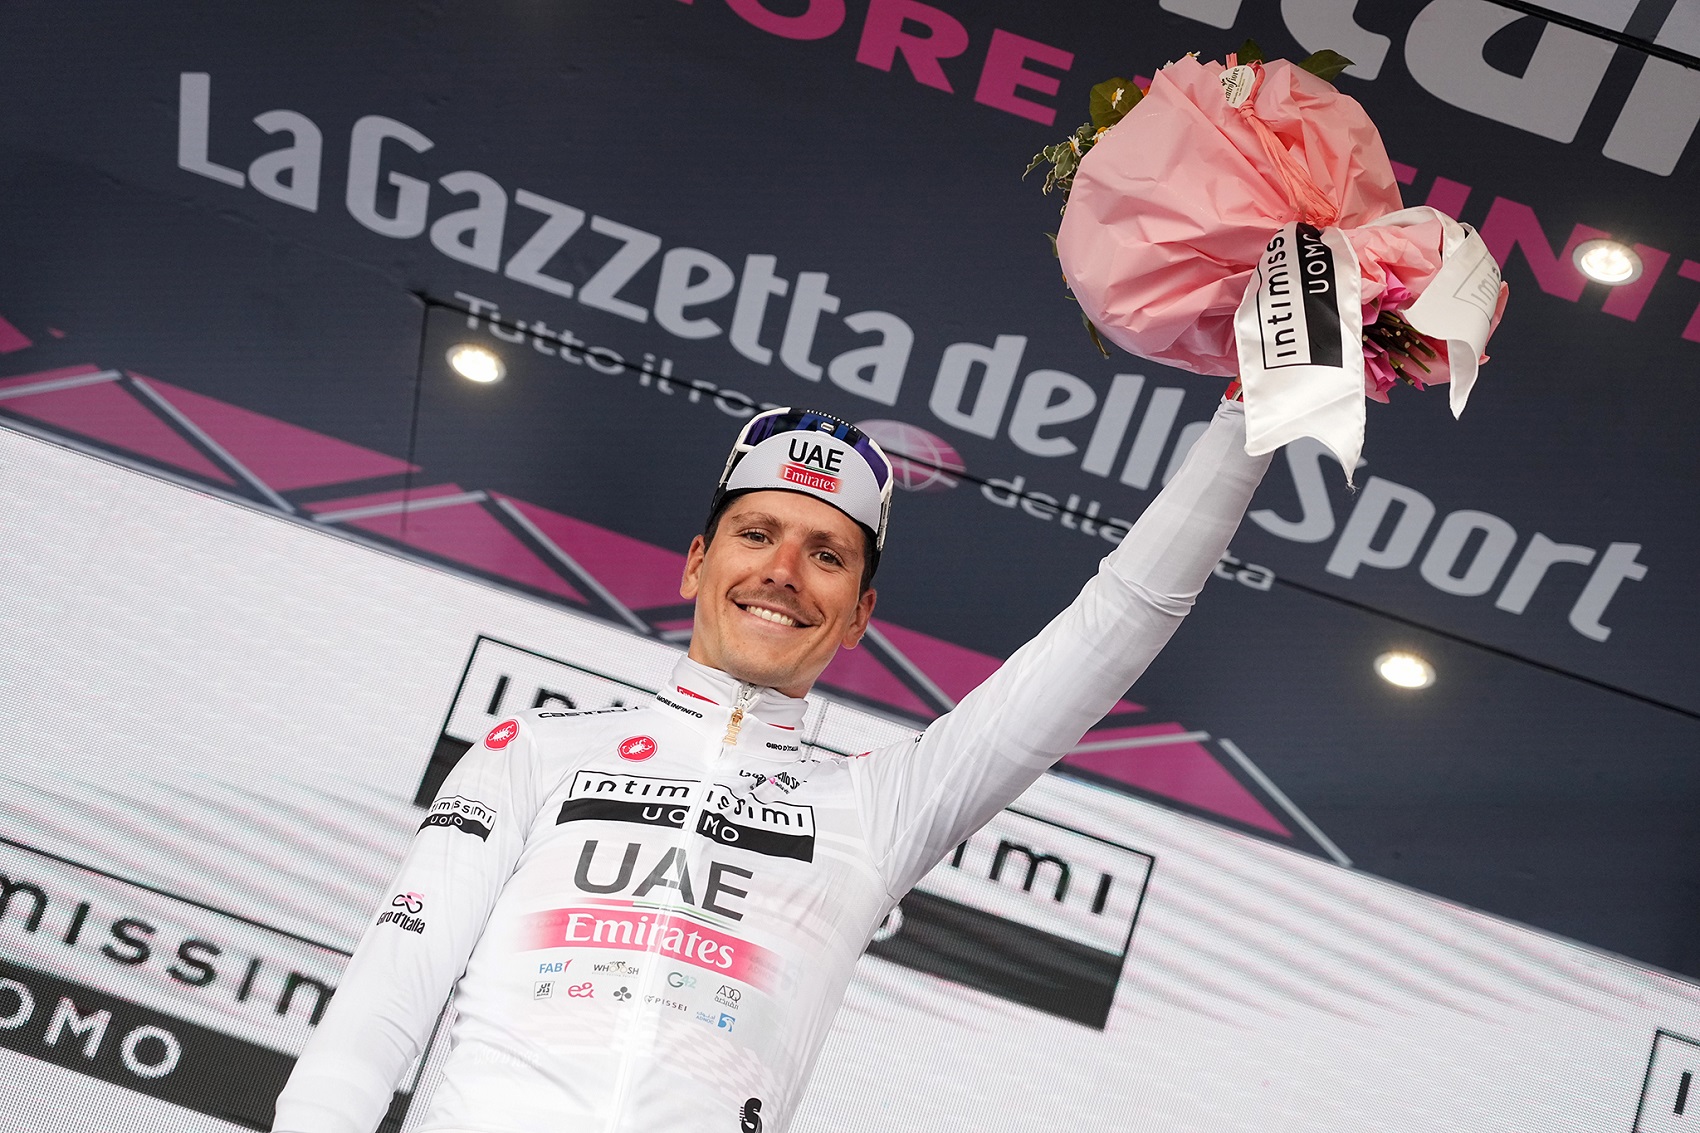 Giro – A vitória de João Almeida no Monte Bondone foto a foto